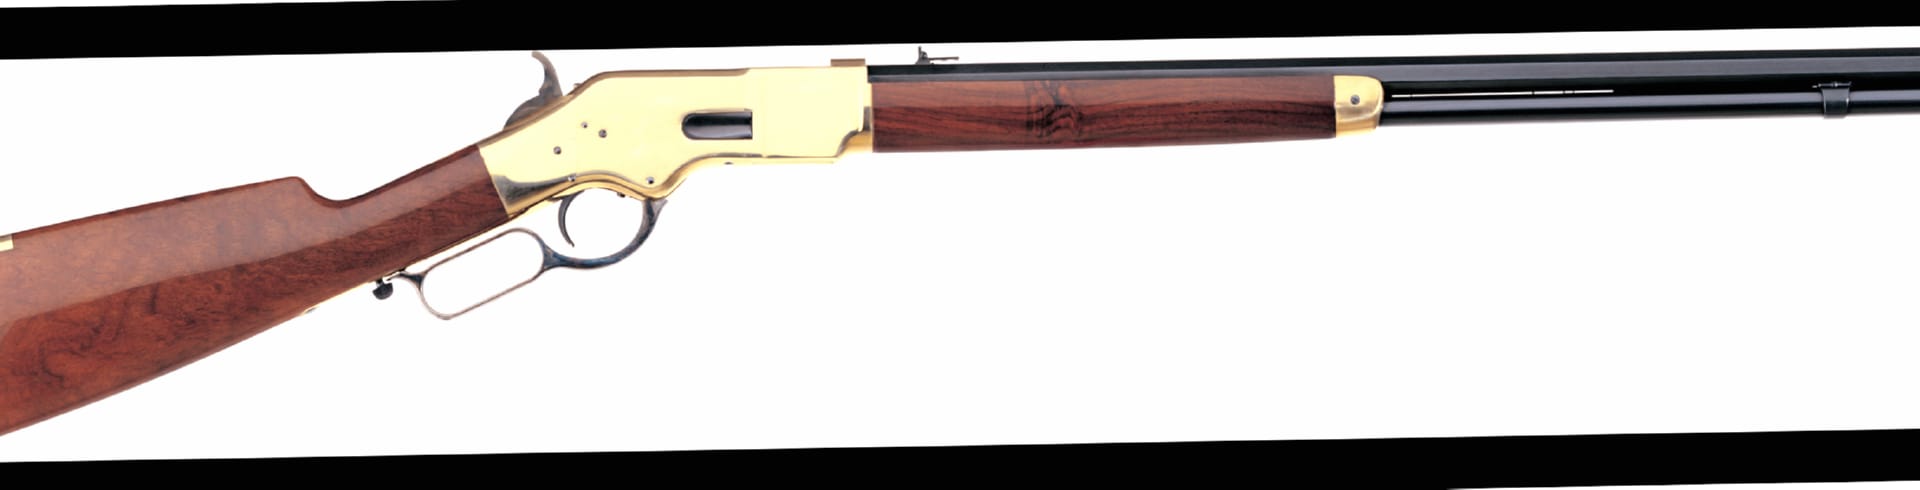 Uberti 1866 Yellowboy Rifle at 1280 x 960 size wallpapers HD quality